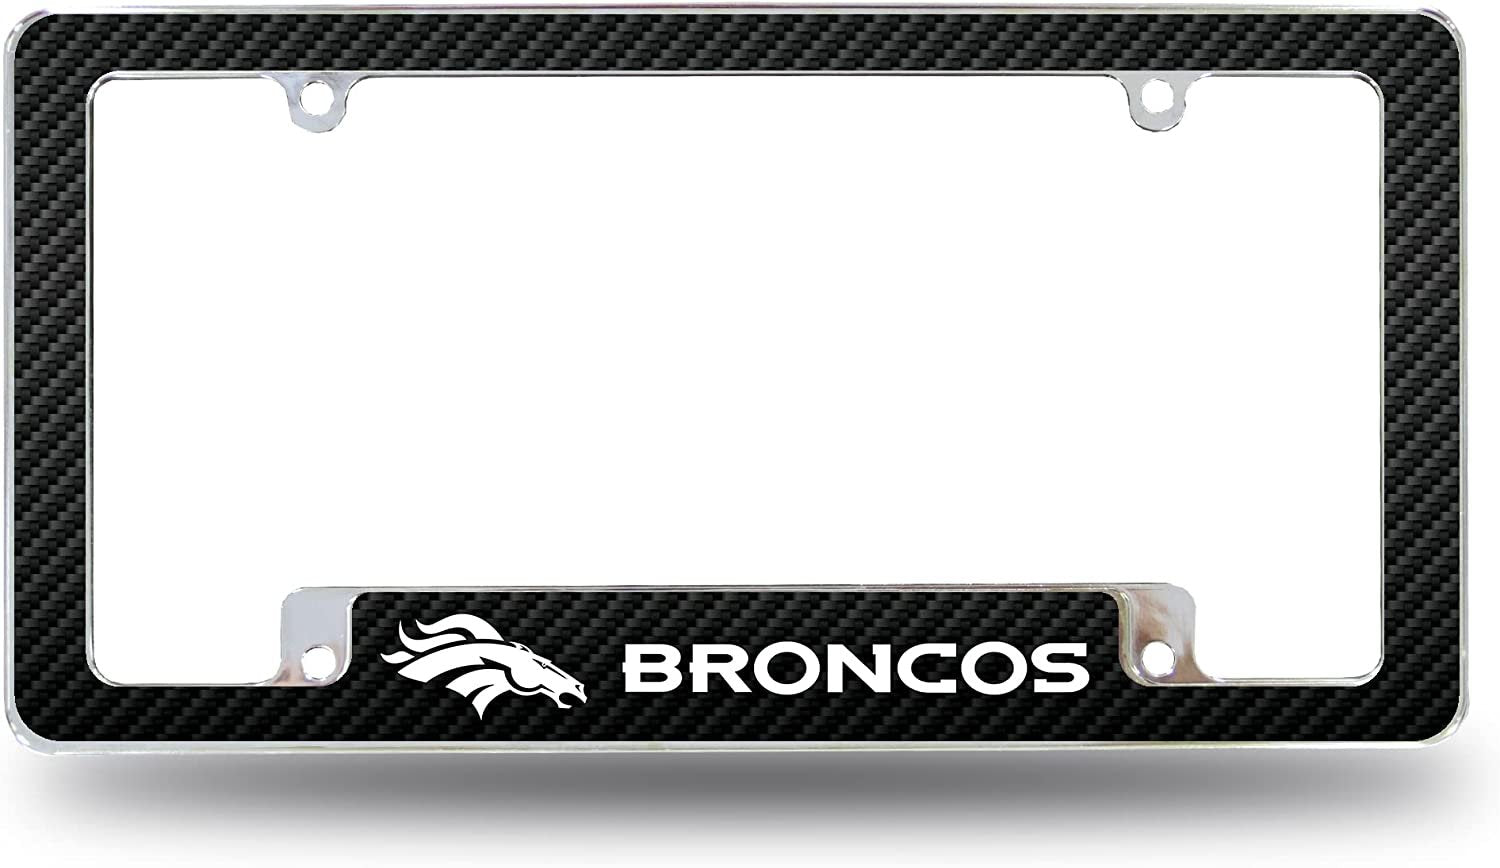 Denver Broncos Metal License Plate Frame Chrome Tag Cover Carbon Fiber Design 6x12 Inch